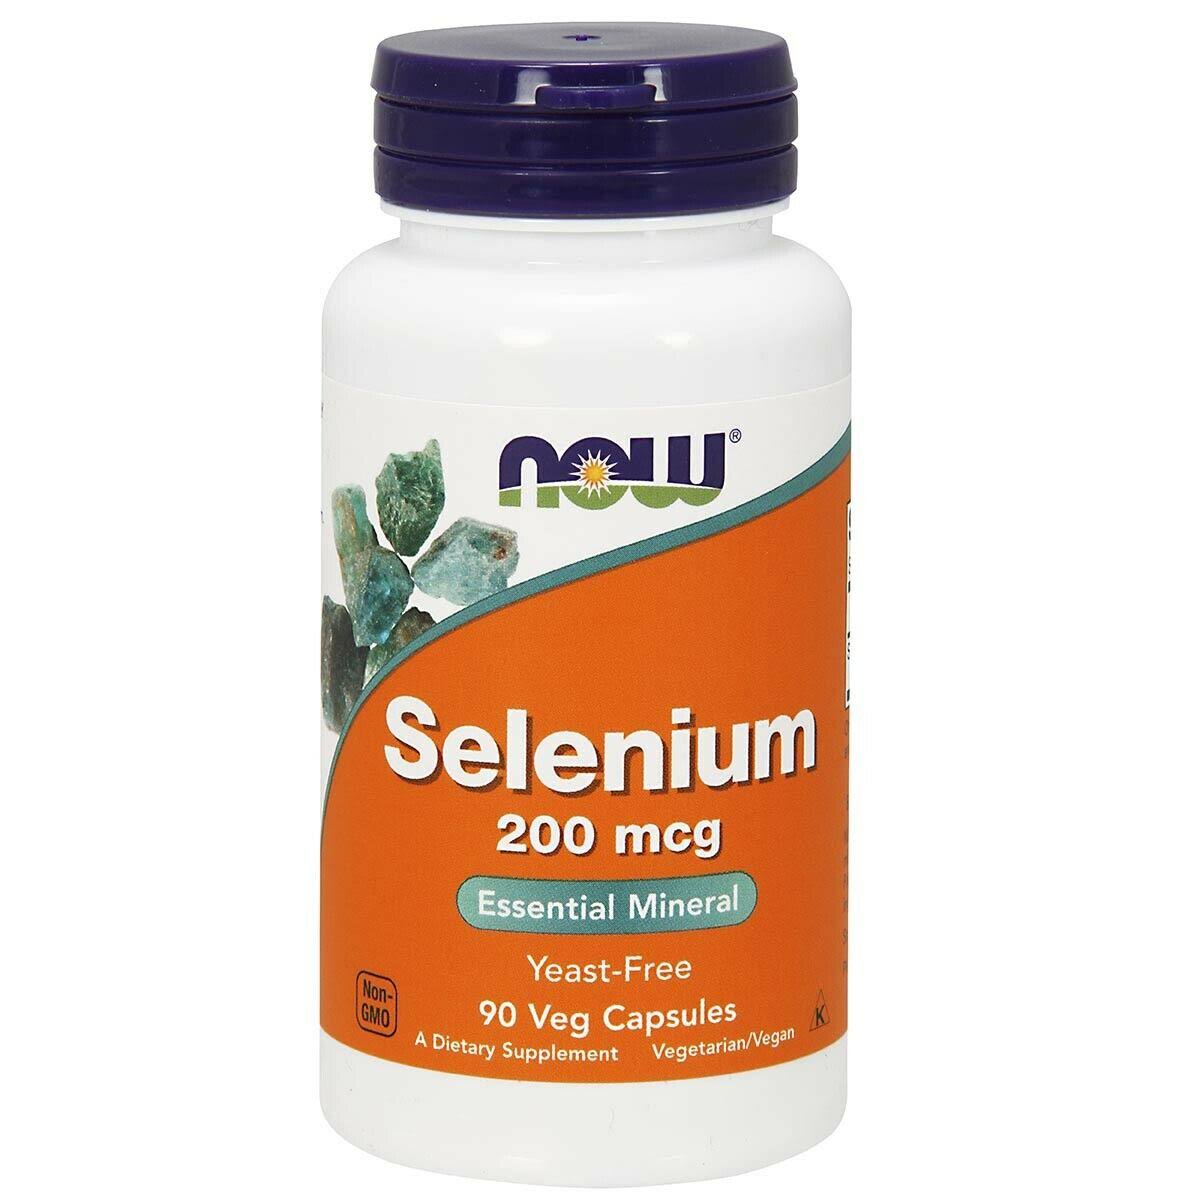 Now Selenium Essential Mineral Supplement - 200mcg, 180ct